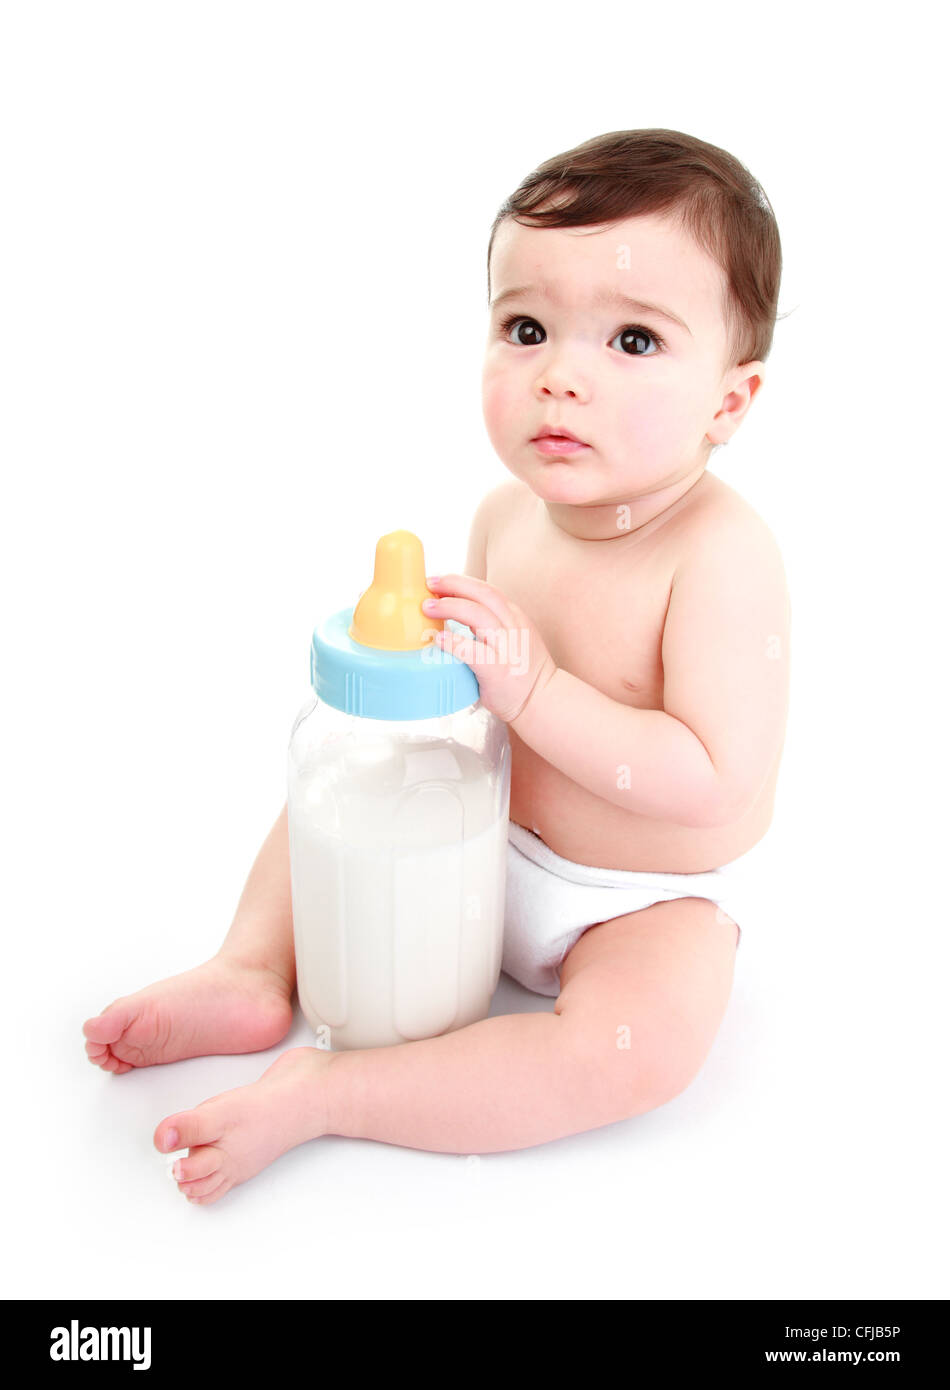 Baby halten riesige Flasche Milch Stockfotografie - Alamy